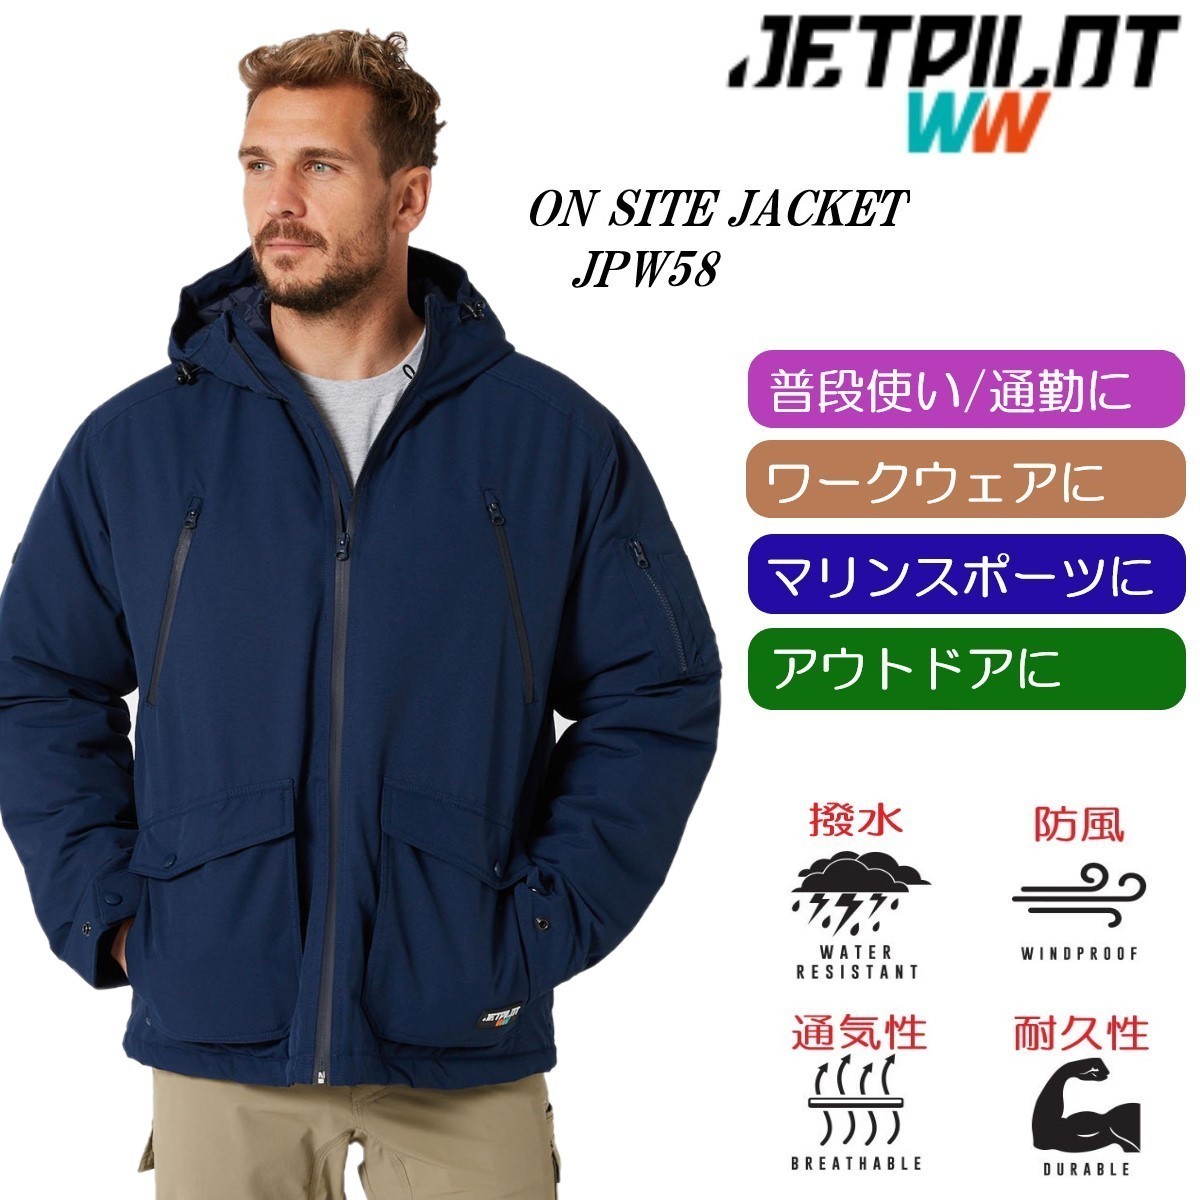 ジェットパイロット JETPILOT マリンコート 送料無料 オンサイトジャケット JPW58 ネイビー S 撥水 防風 マリン ワークウェア